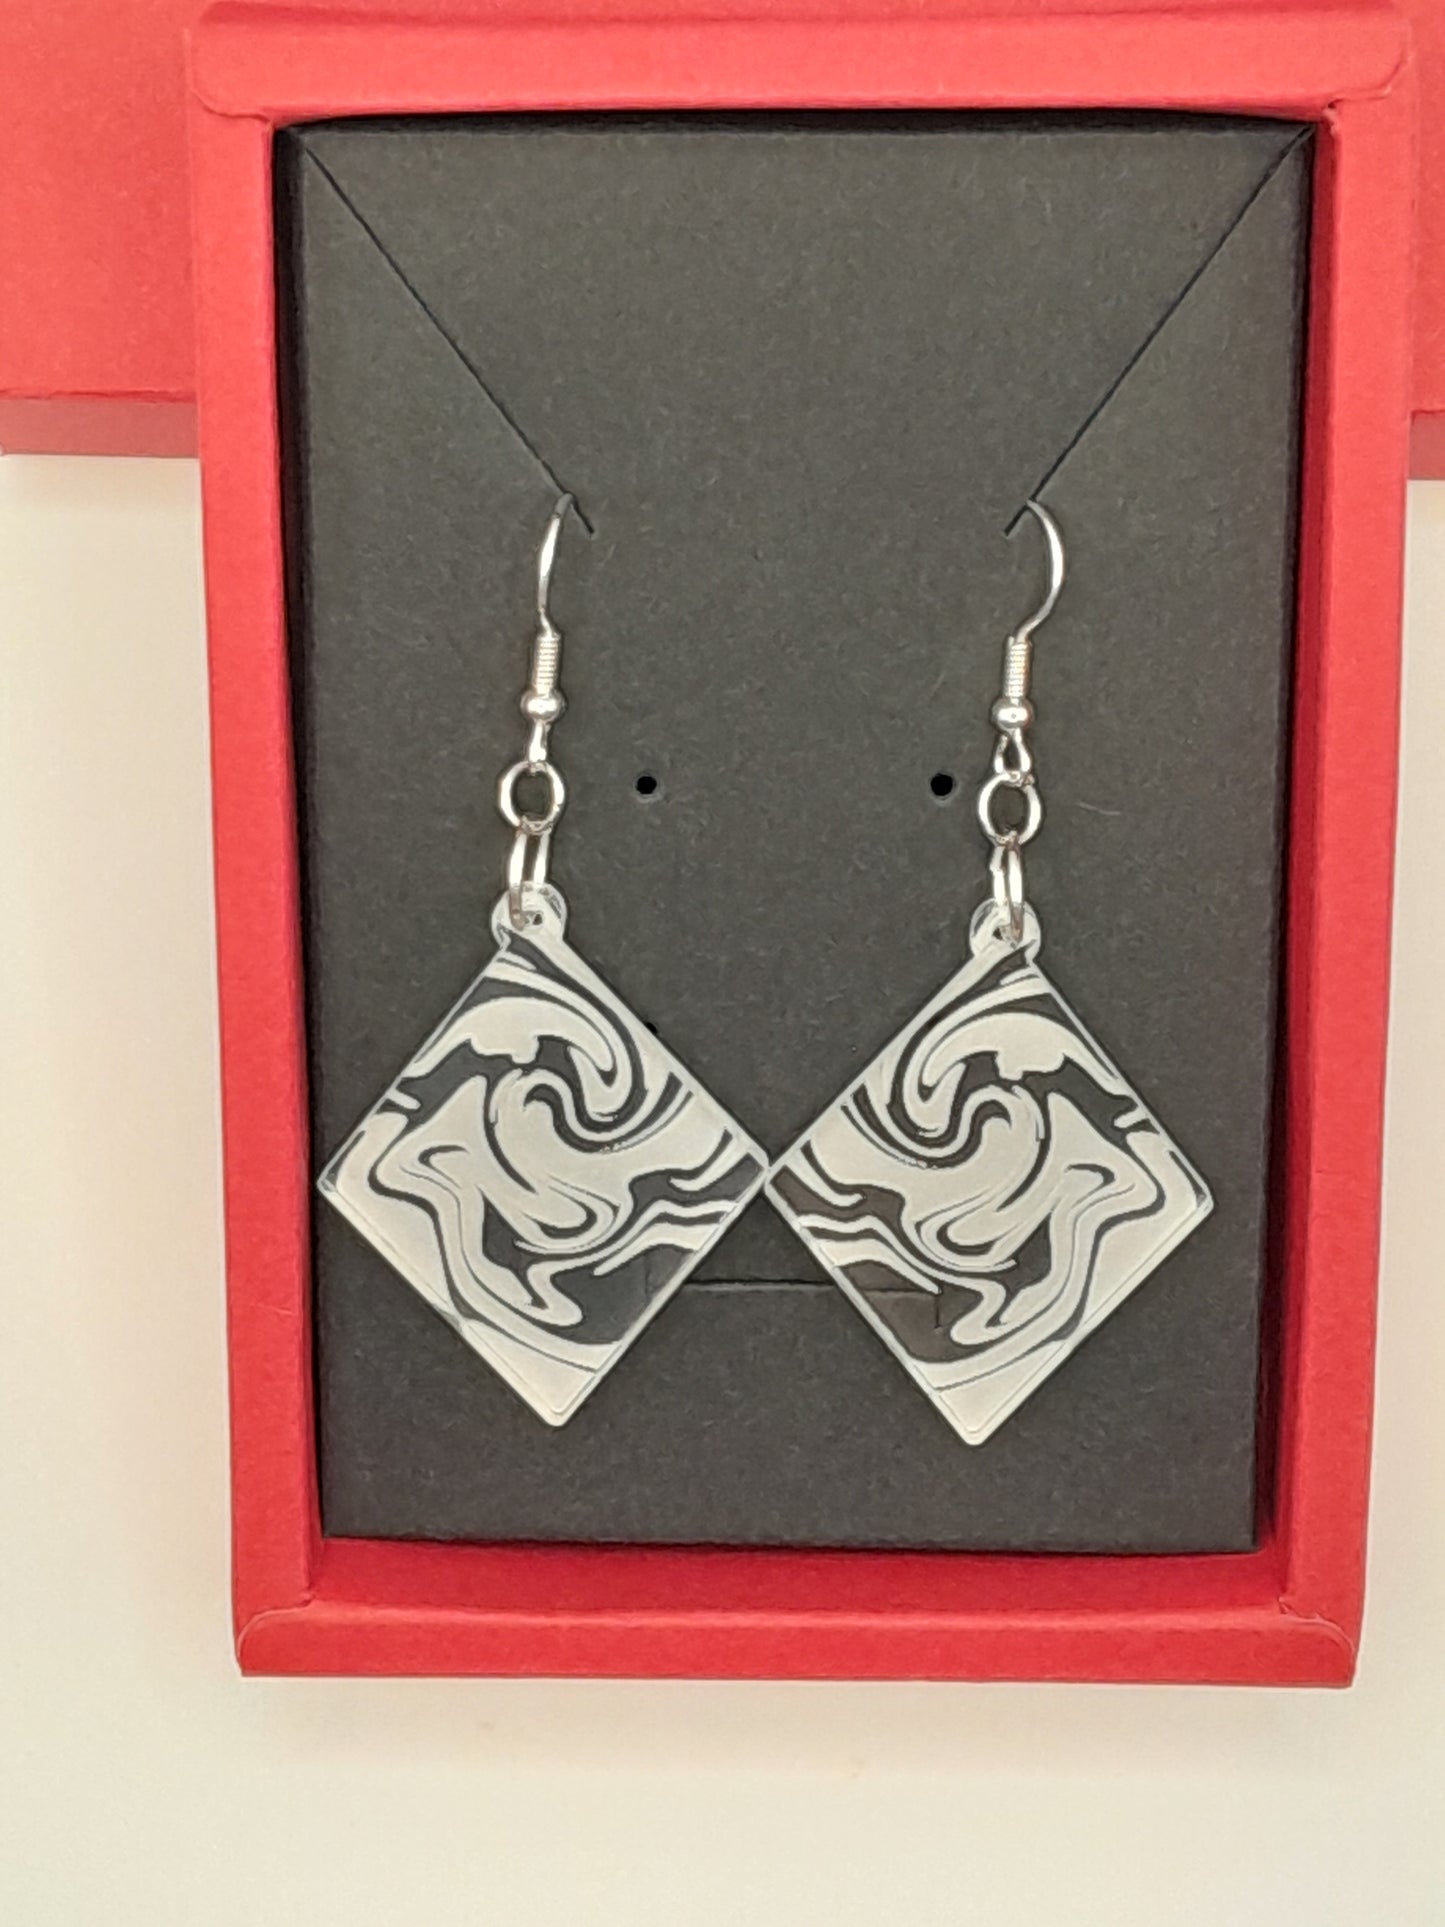 Acrylic diamond swirl earrings